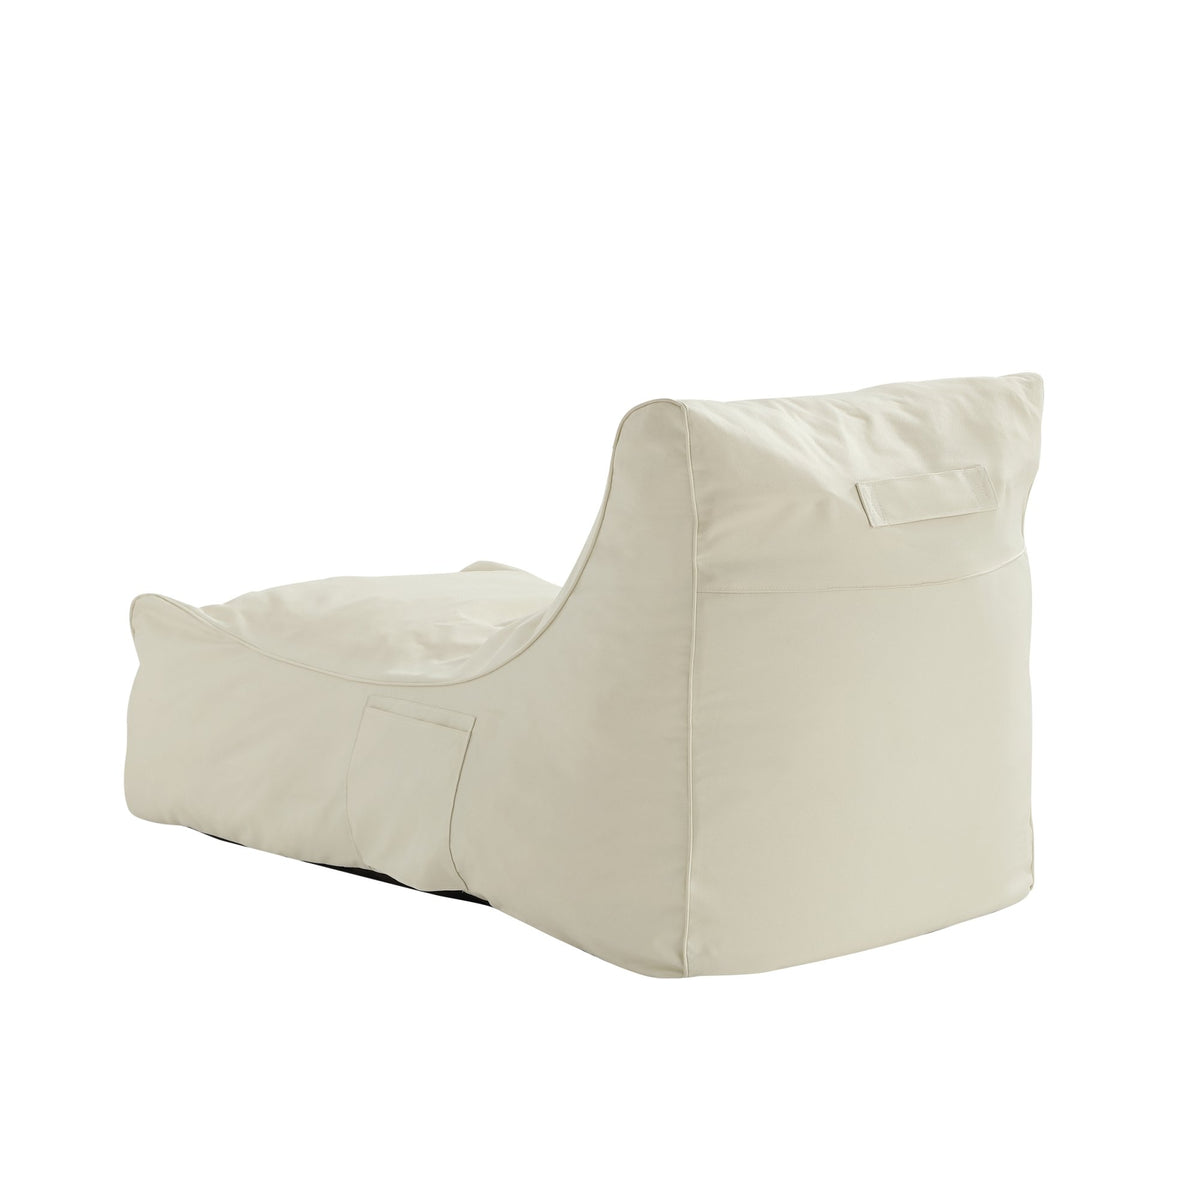 Bean Bag Chair/ Foam Sofa/ Lounge Chair/ Sleeper Couch/ Memory Foam Sofa/ Floor Chair - Resty Bean Bag Chair Sleeper Memory Foam Sofa